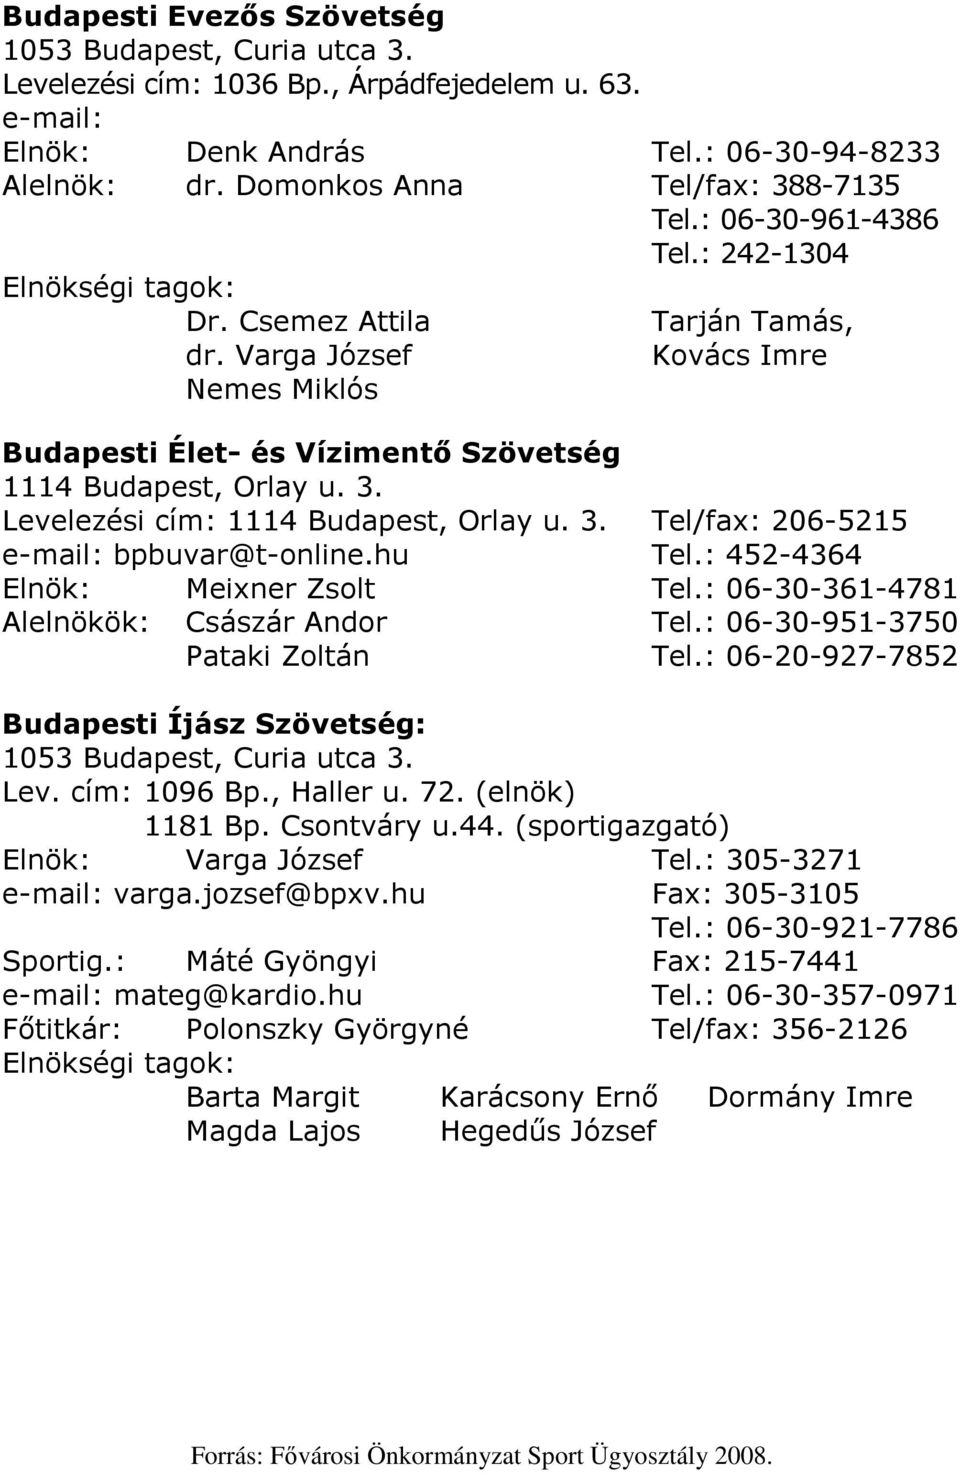 Levelezési cím: 1114 Budapest, Orlay u. 3. Tel/fax: 206-5215 e-mail: bpbuvar@t-online.hu Tel.: 452-4364 Elnök: Meixner Zsolt Tel.: 06-30-361-4781 Alelnökök: Császár Andor Tel.